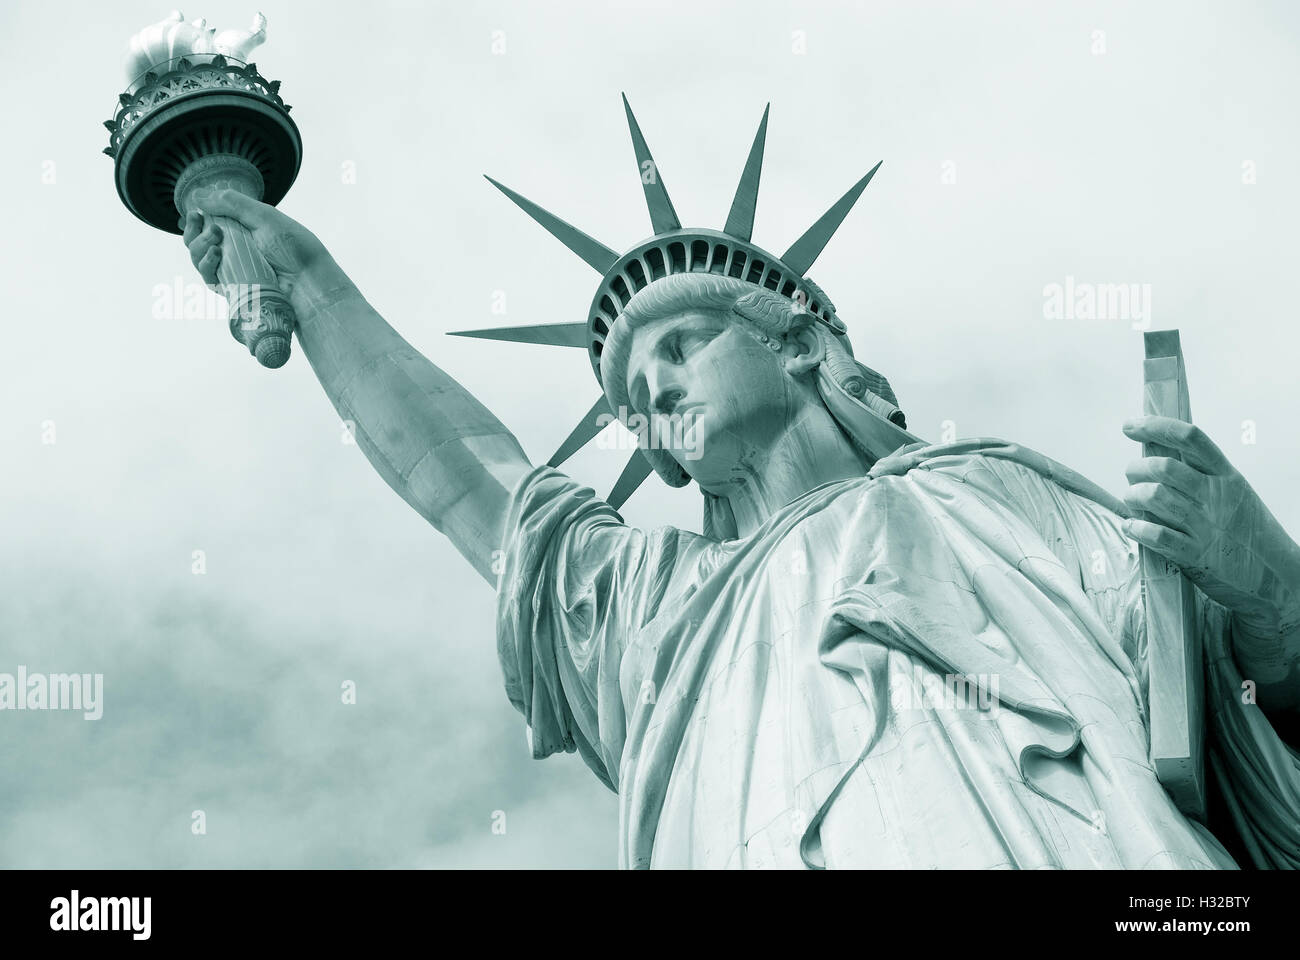 Symbole de l'Amérique - Statue de la liberté. New York, USA. Banque D'Images